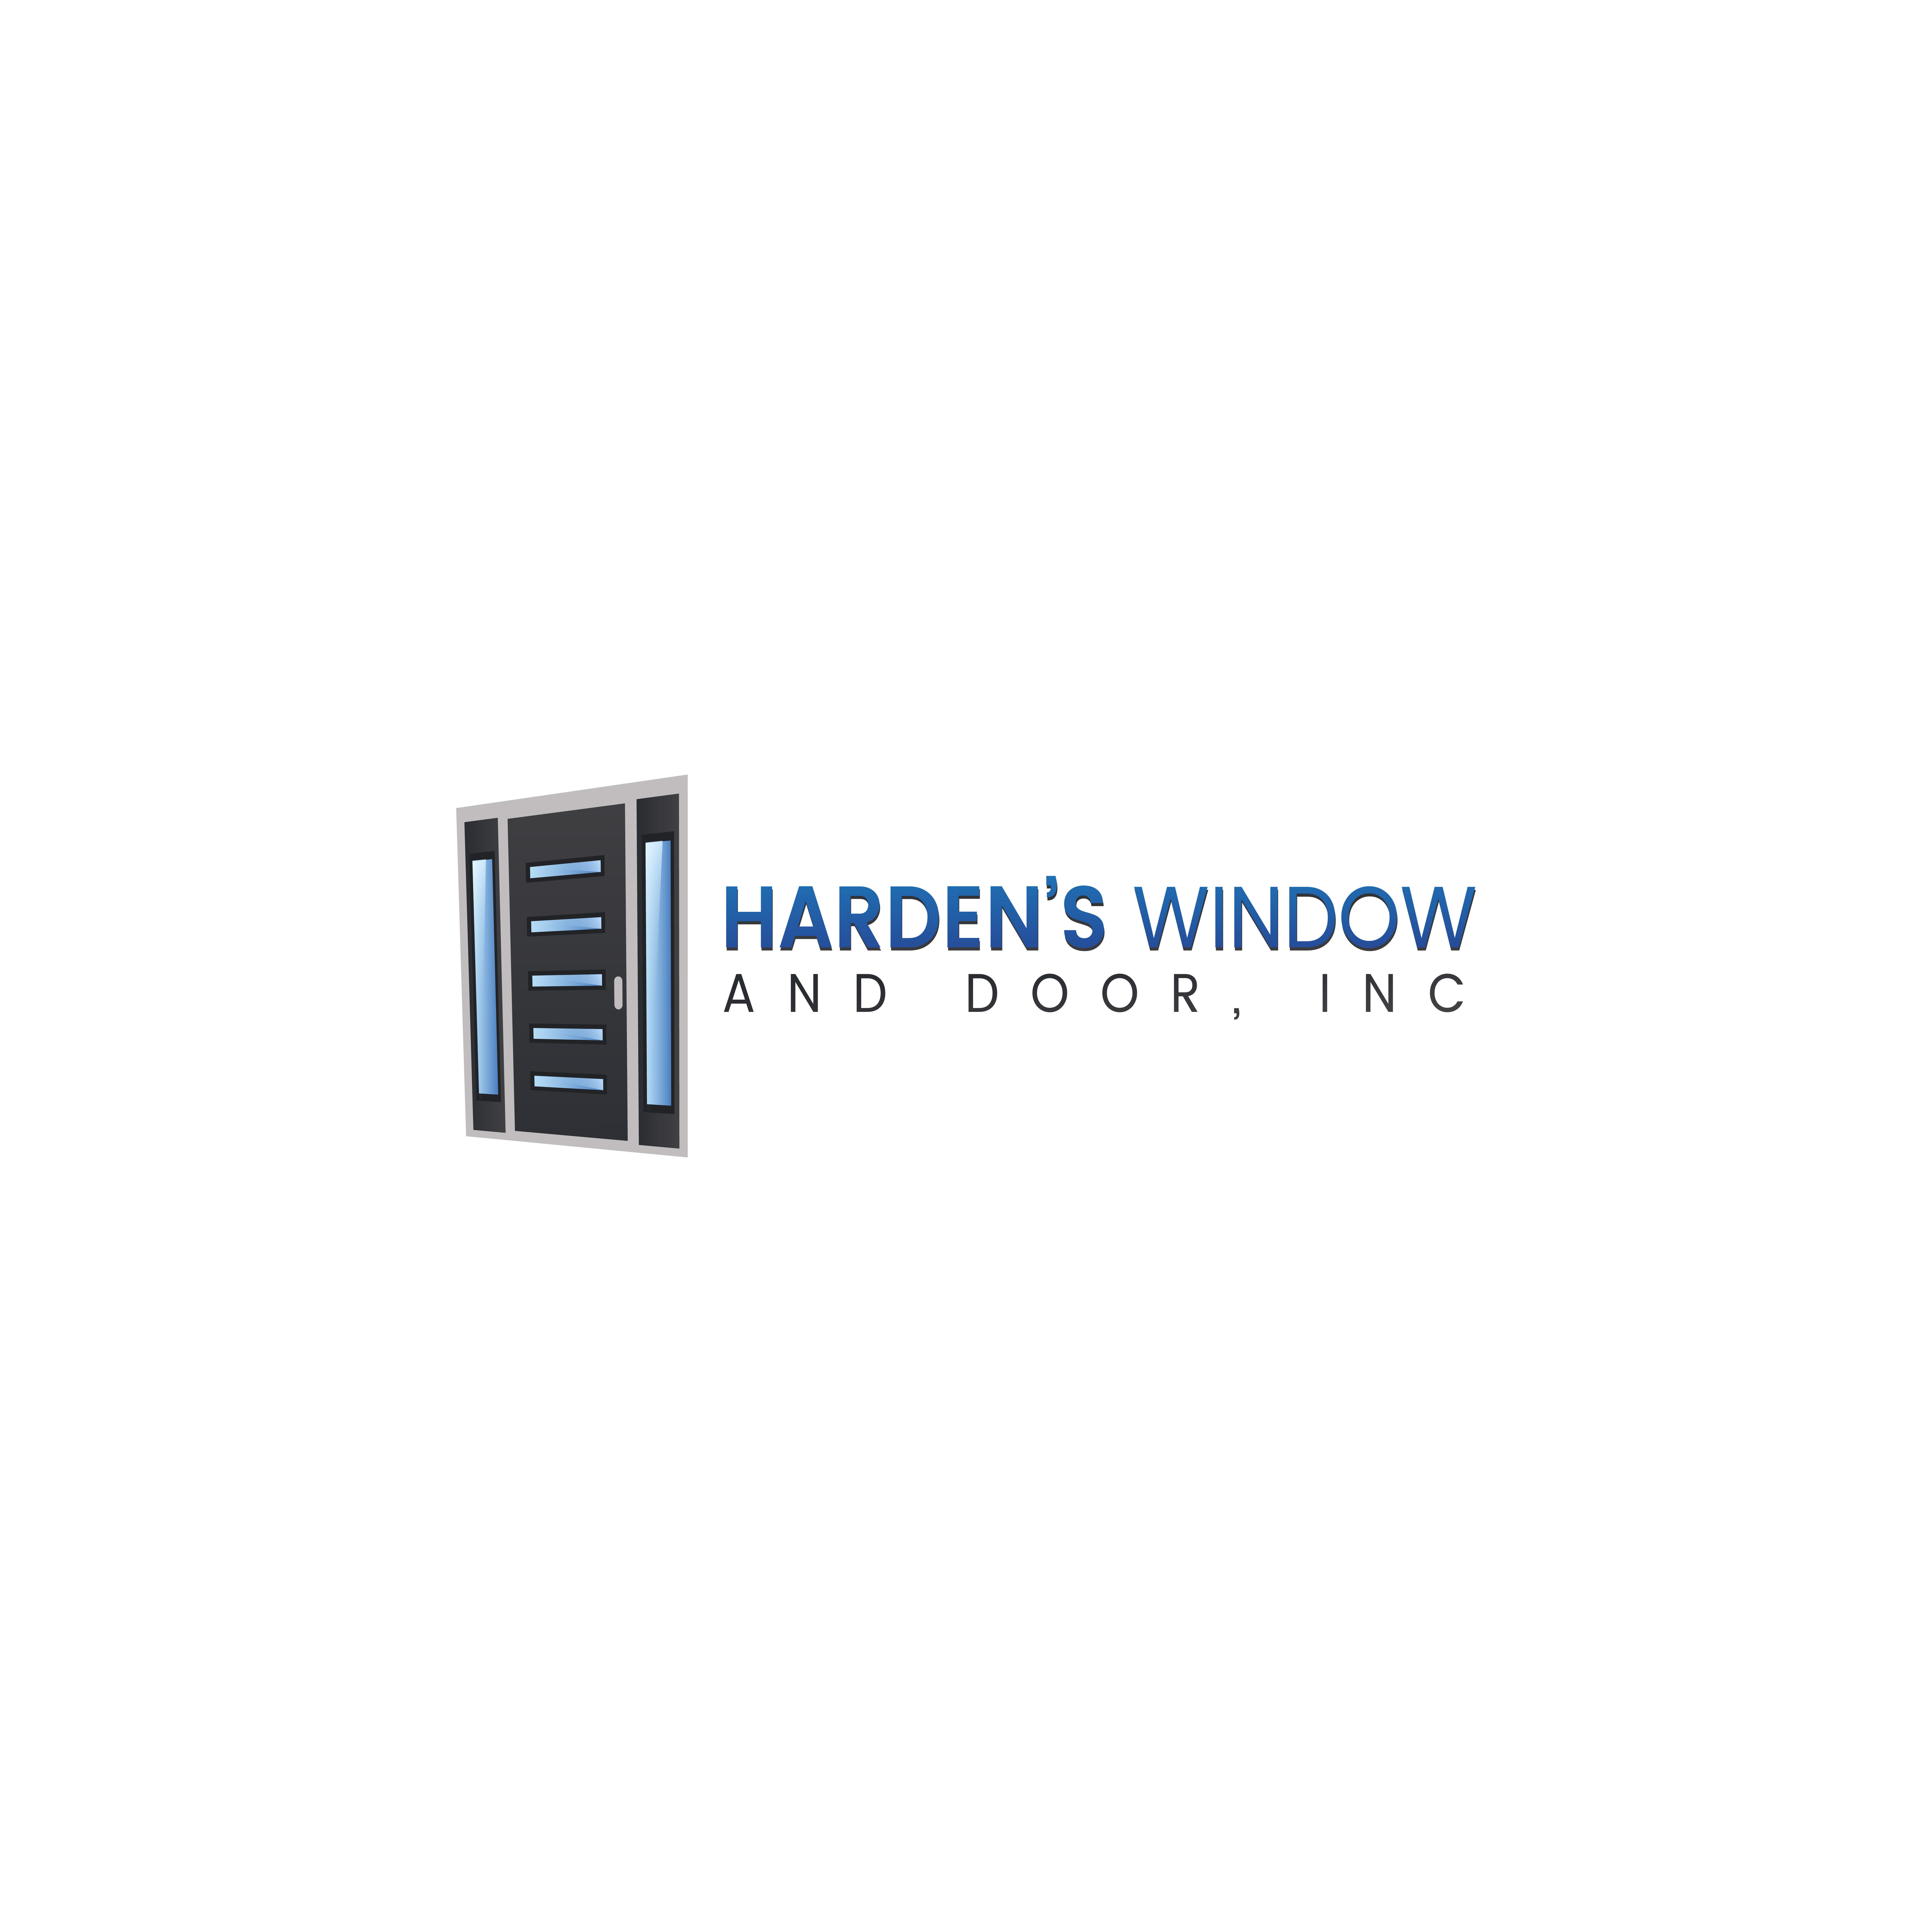 Harden's Window and Door Inc.